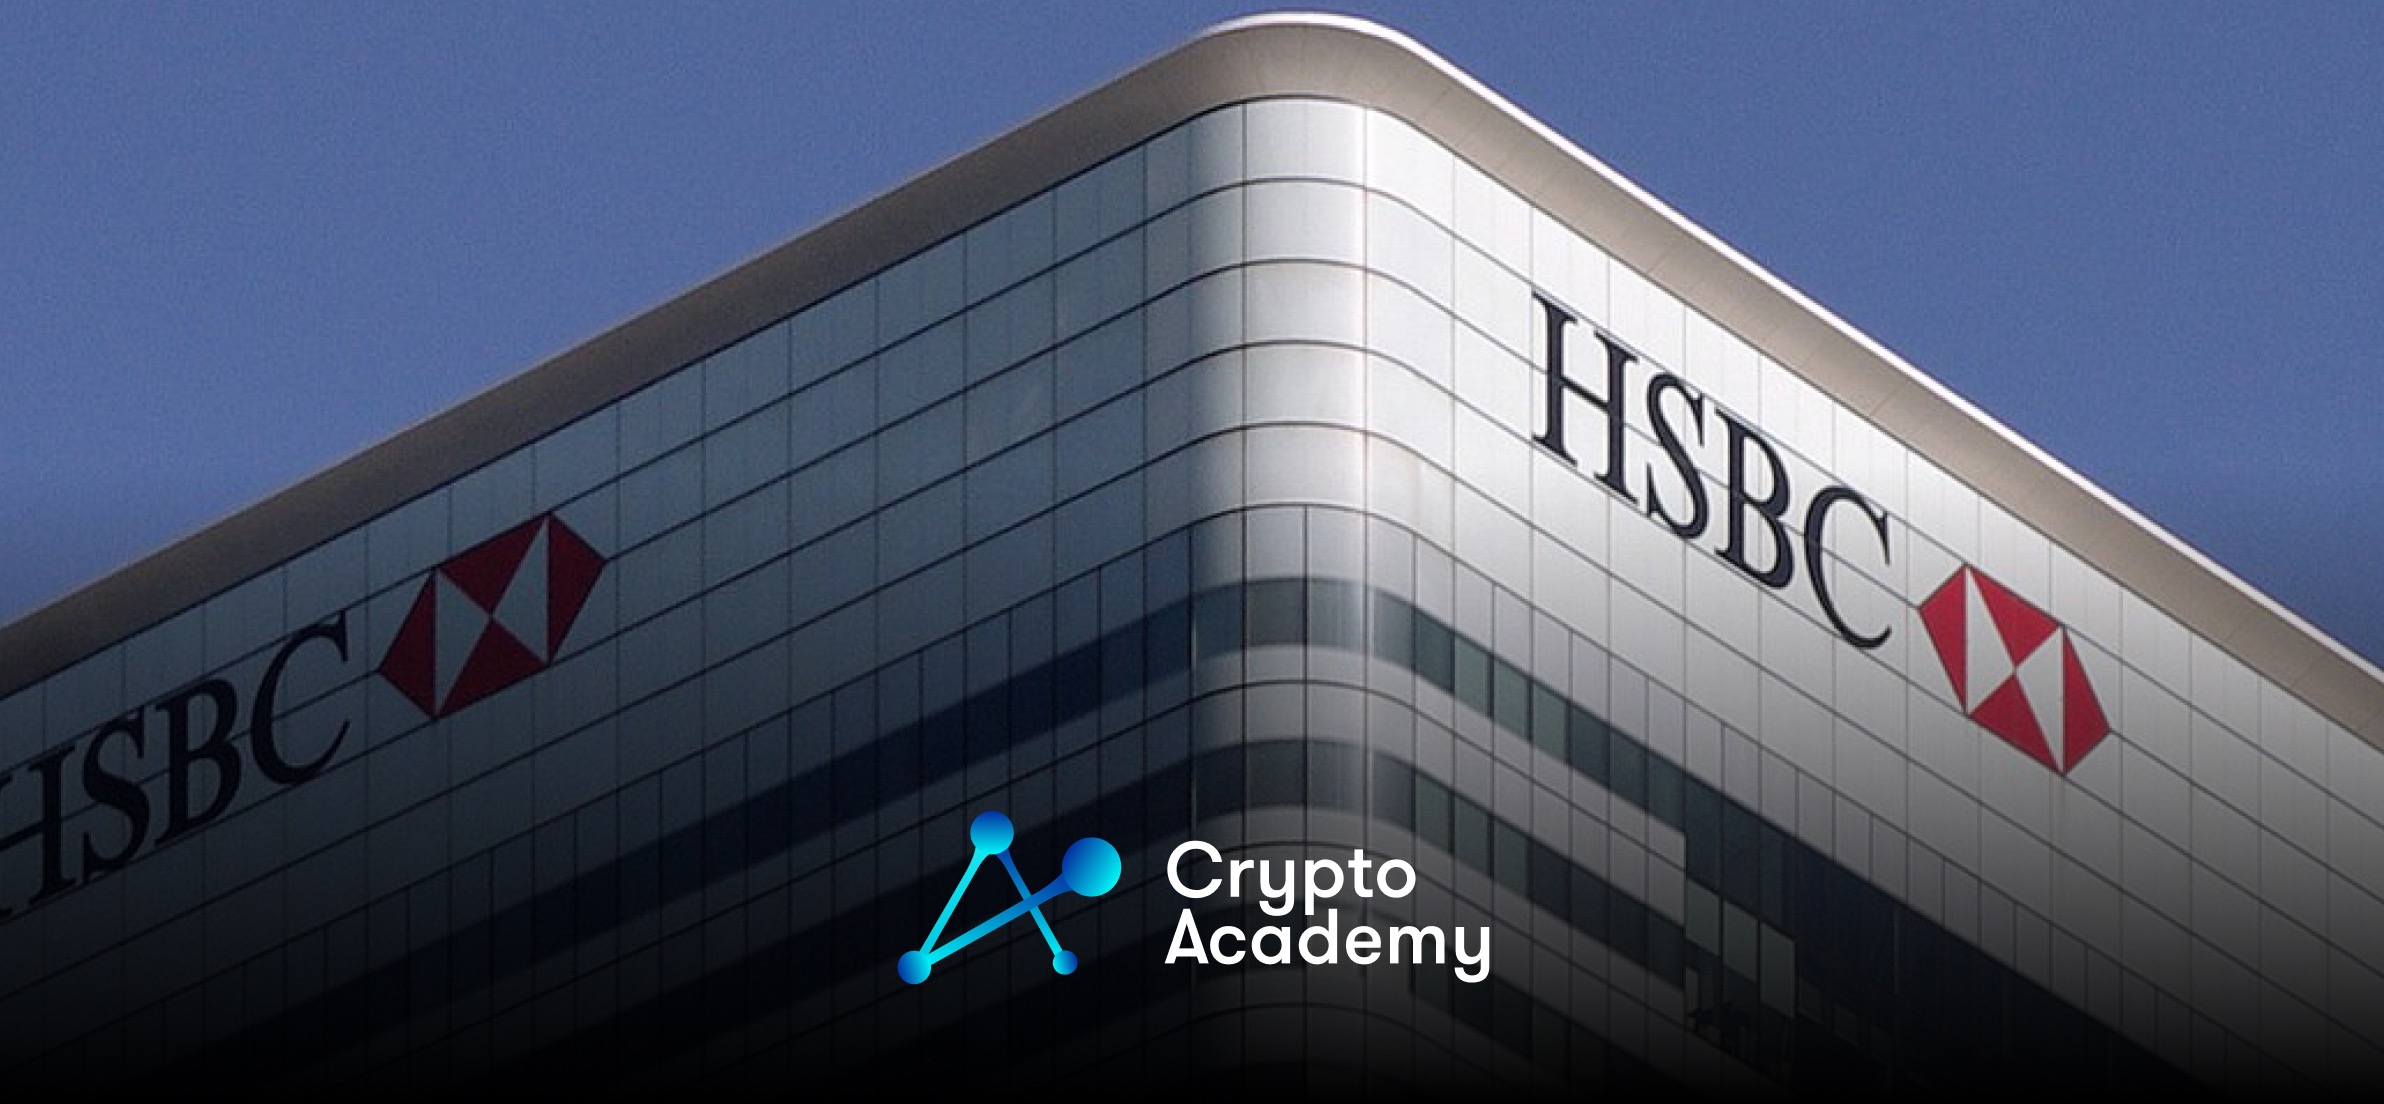 Global Banking Giant HSBC Unveils Custody Platform for Digital Assets